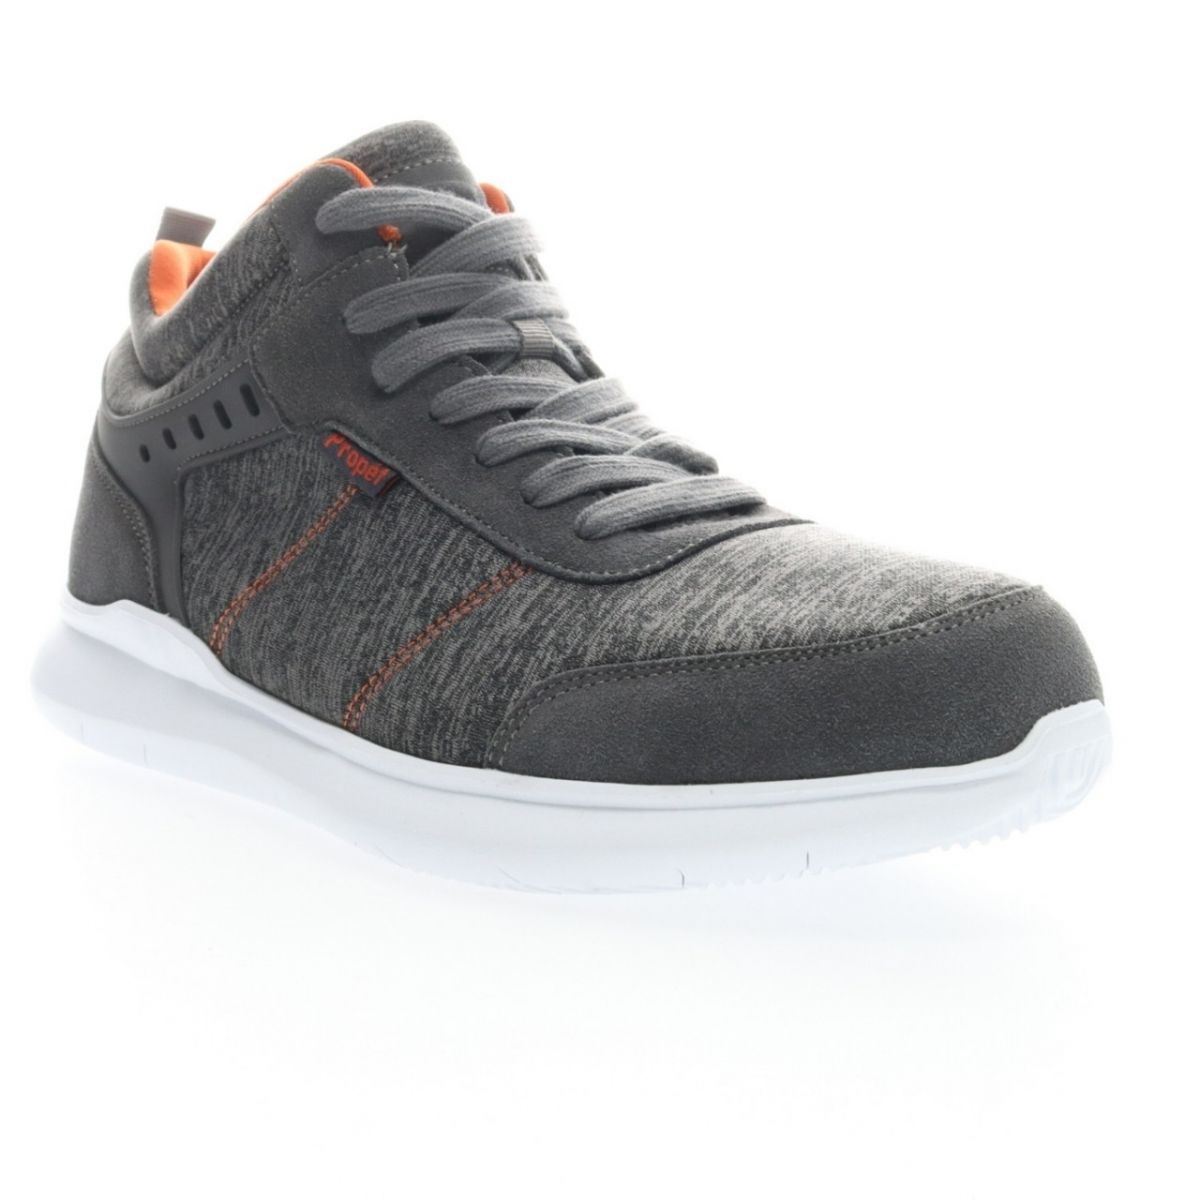 Propet Men's Viator Hi Sneaker Grey/Orange - MAA112MGOR Grey/orange - Grey/orange, 15 XX-Wide